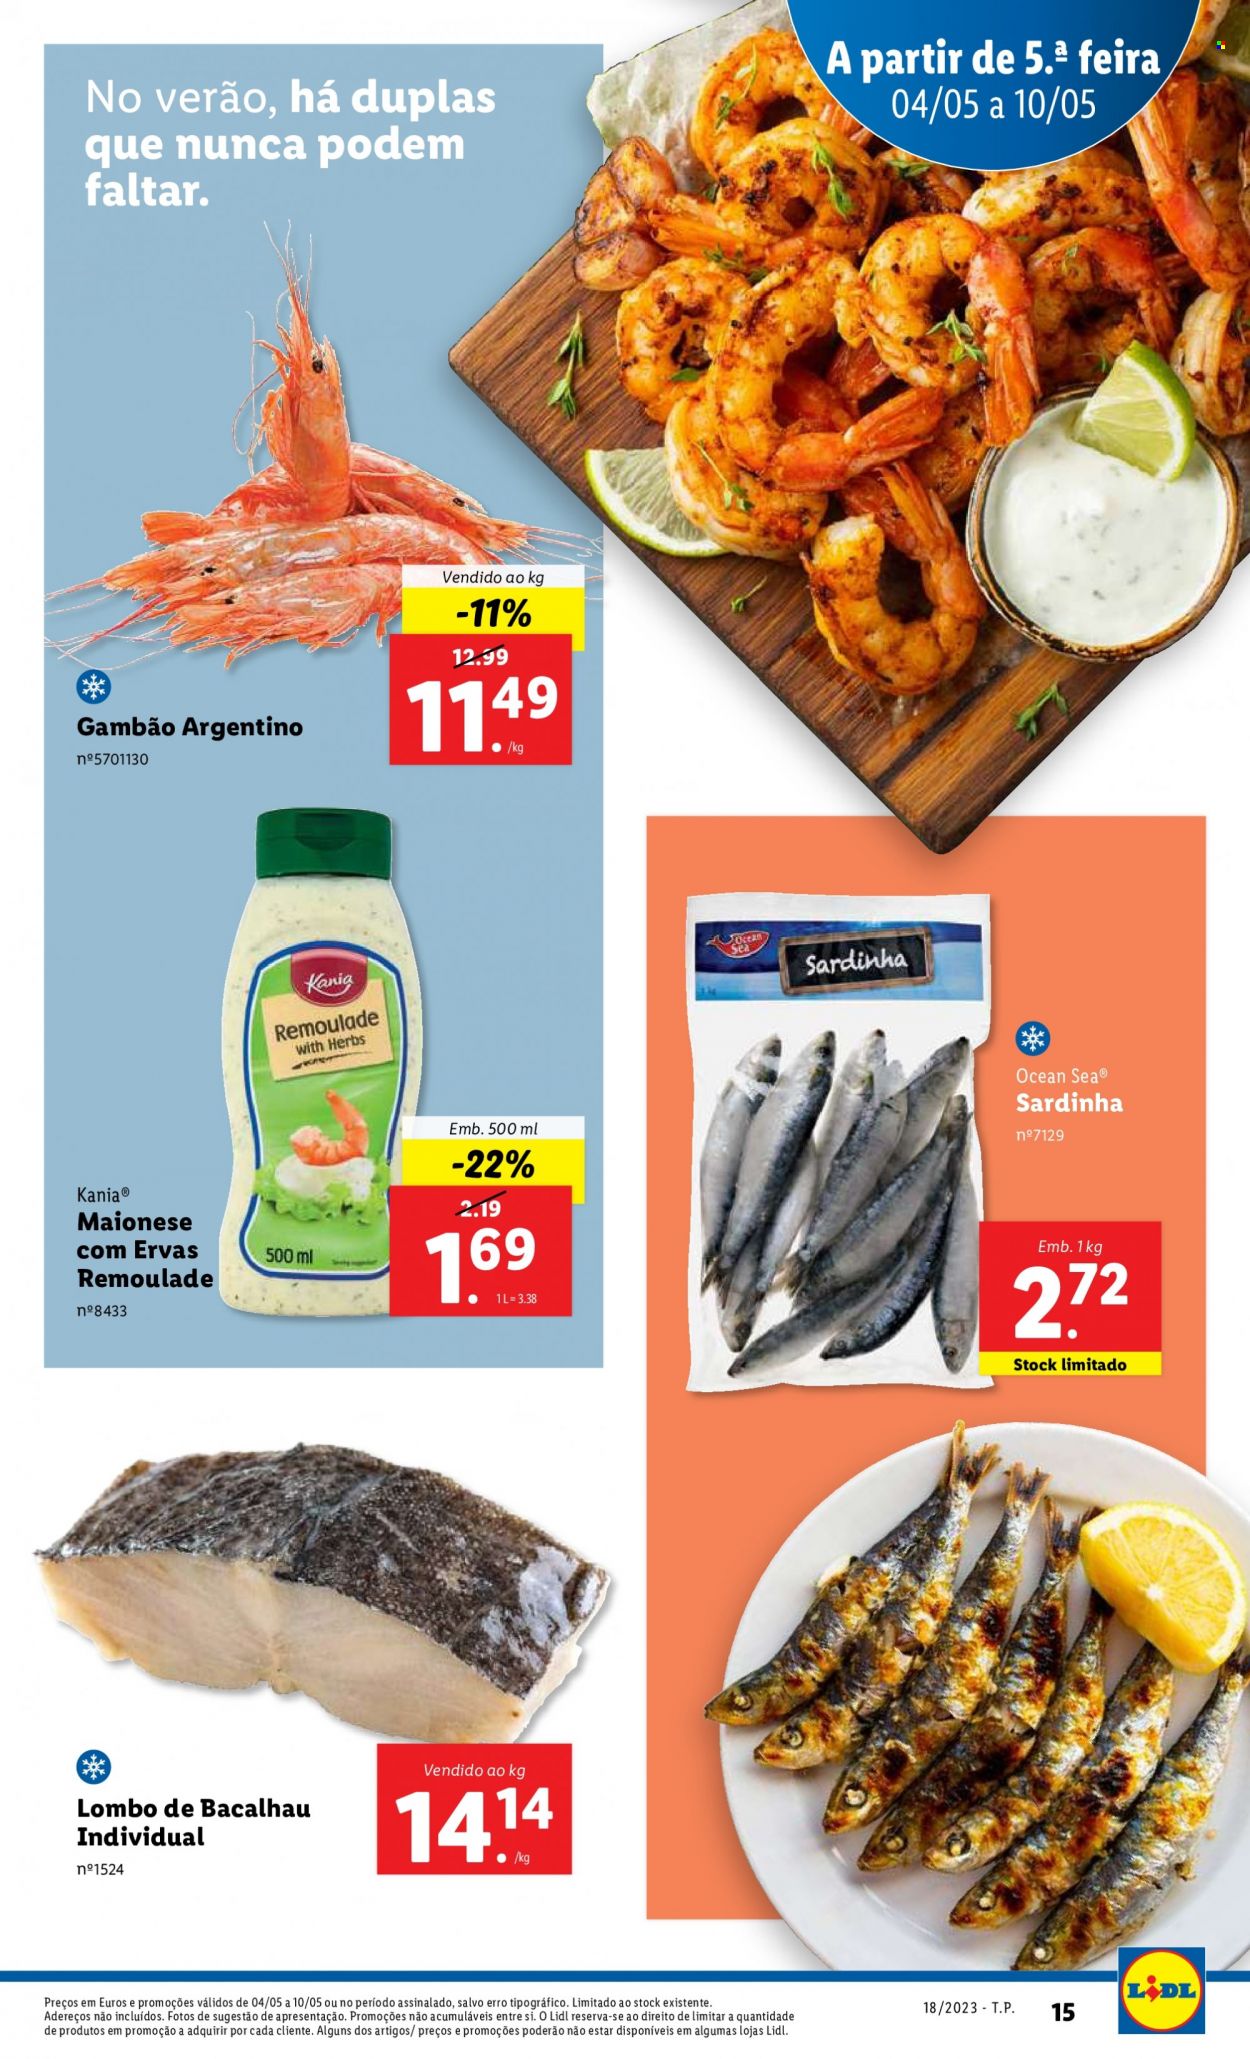 Folheto Lidl - Produtos em promoção - gambão, maionese, sardinhas, bacalhau, peixe. Página 15.